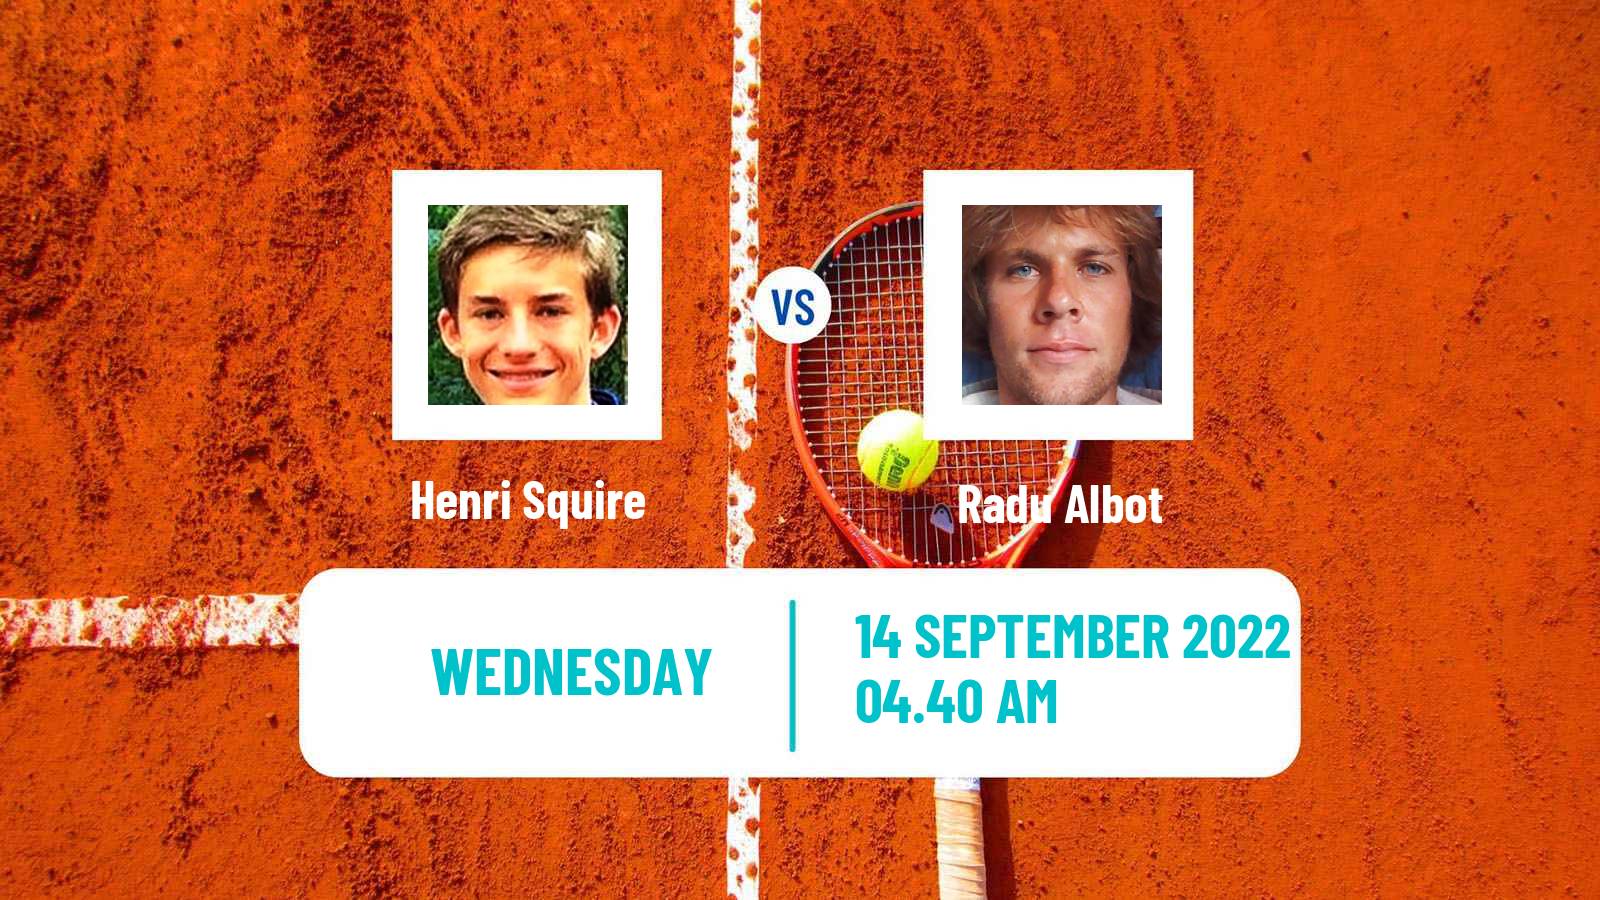 Tennis ATP Challenger Henri Squire - Radu Albot